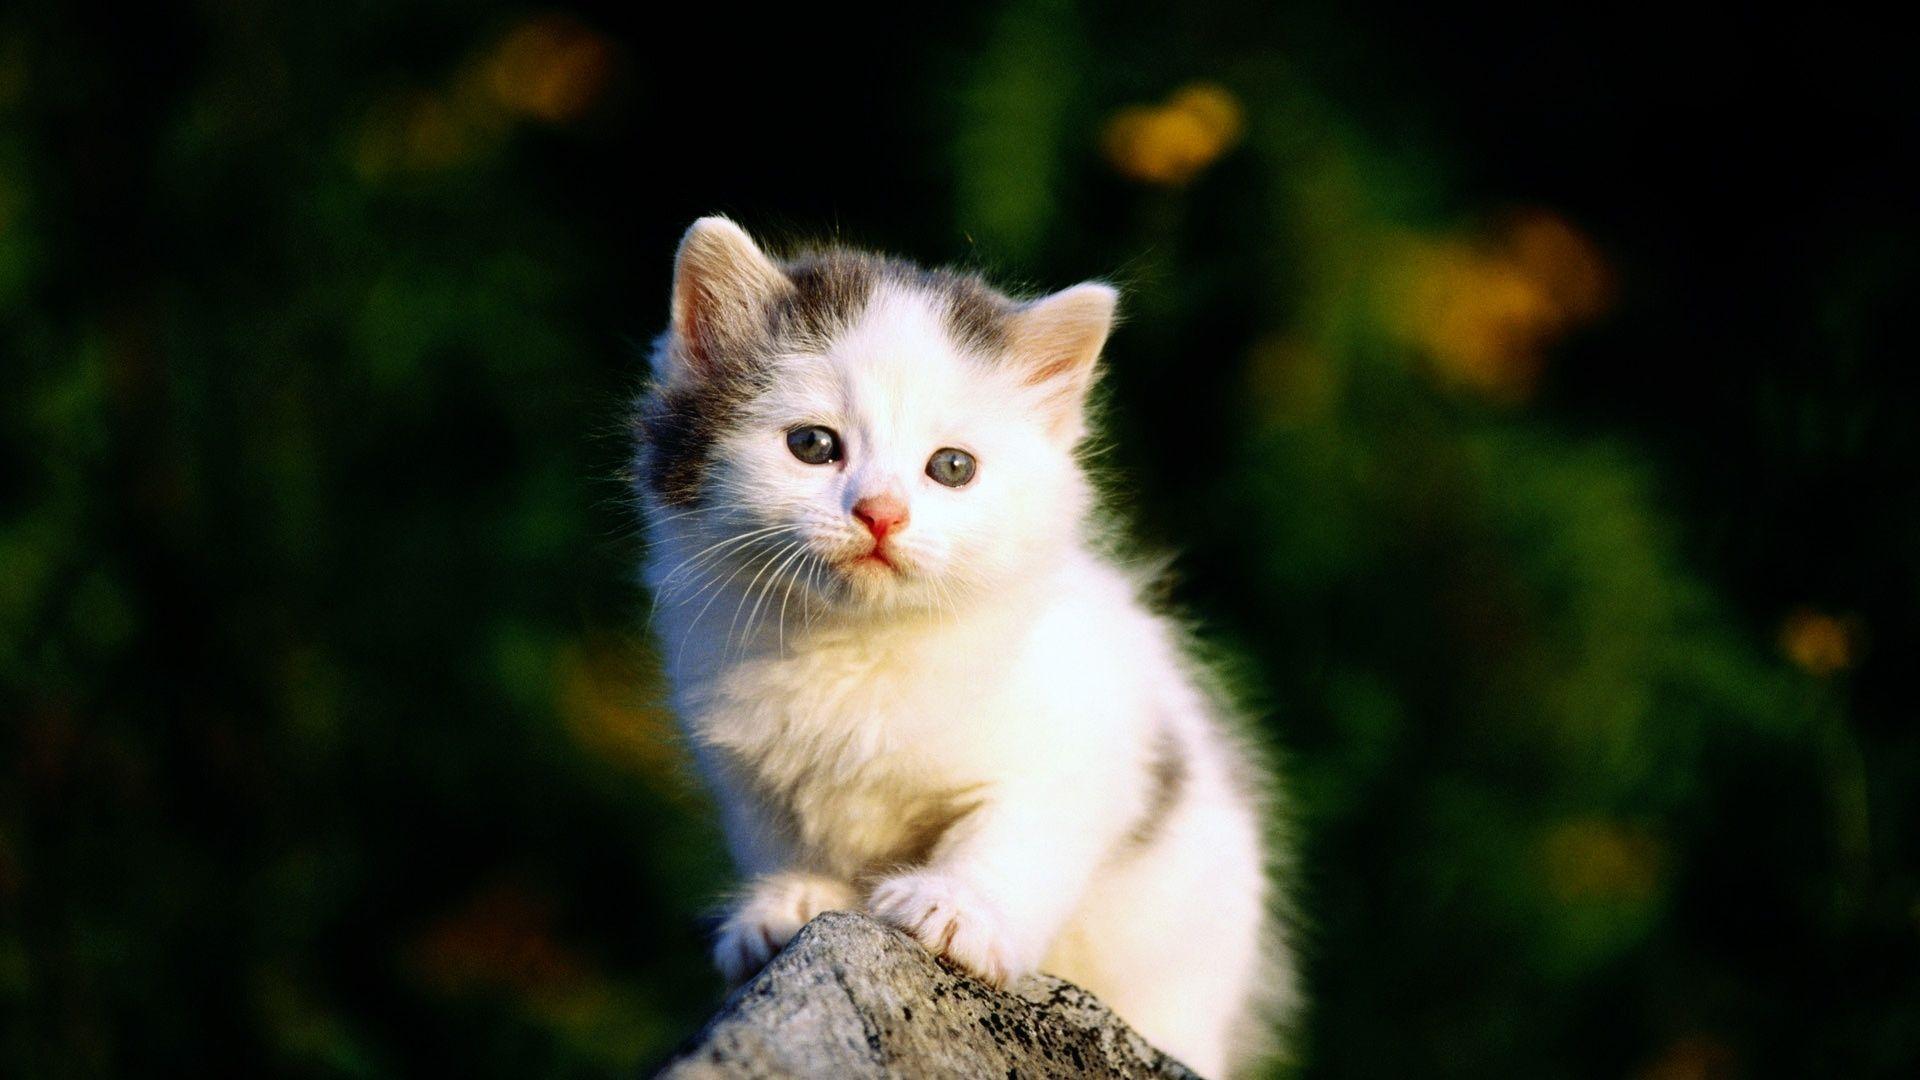 Cute Cat Image